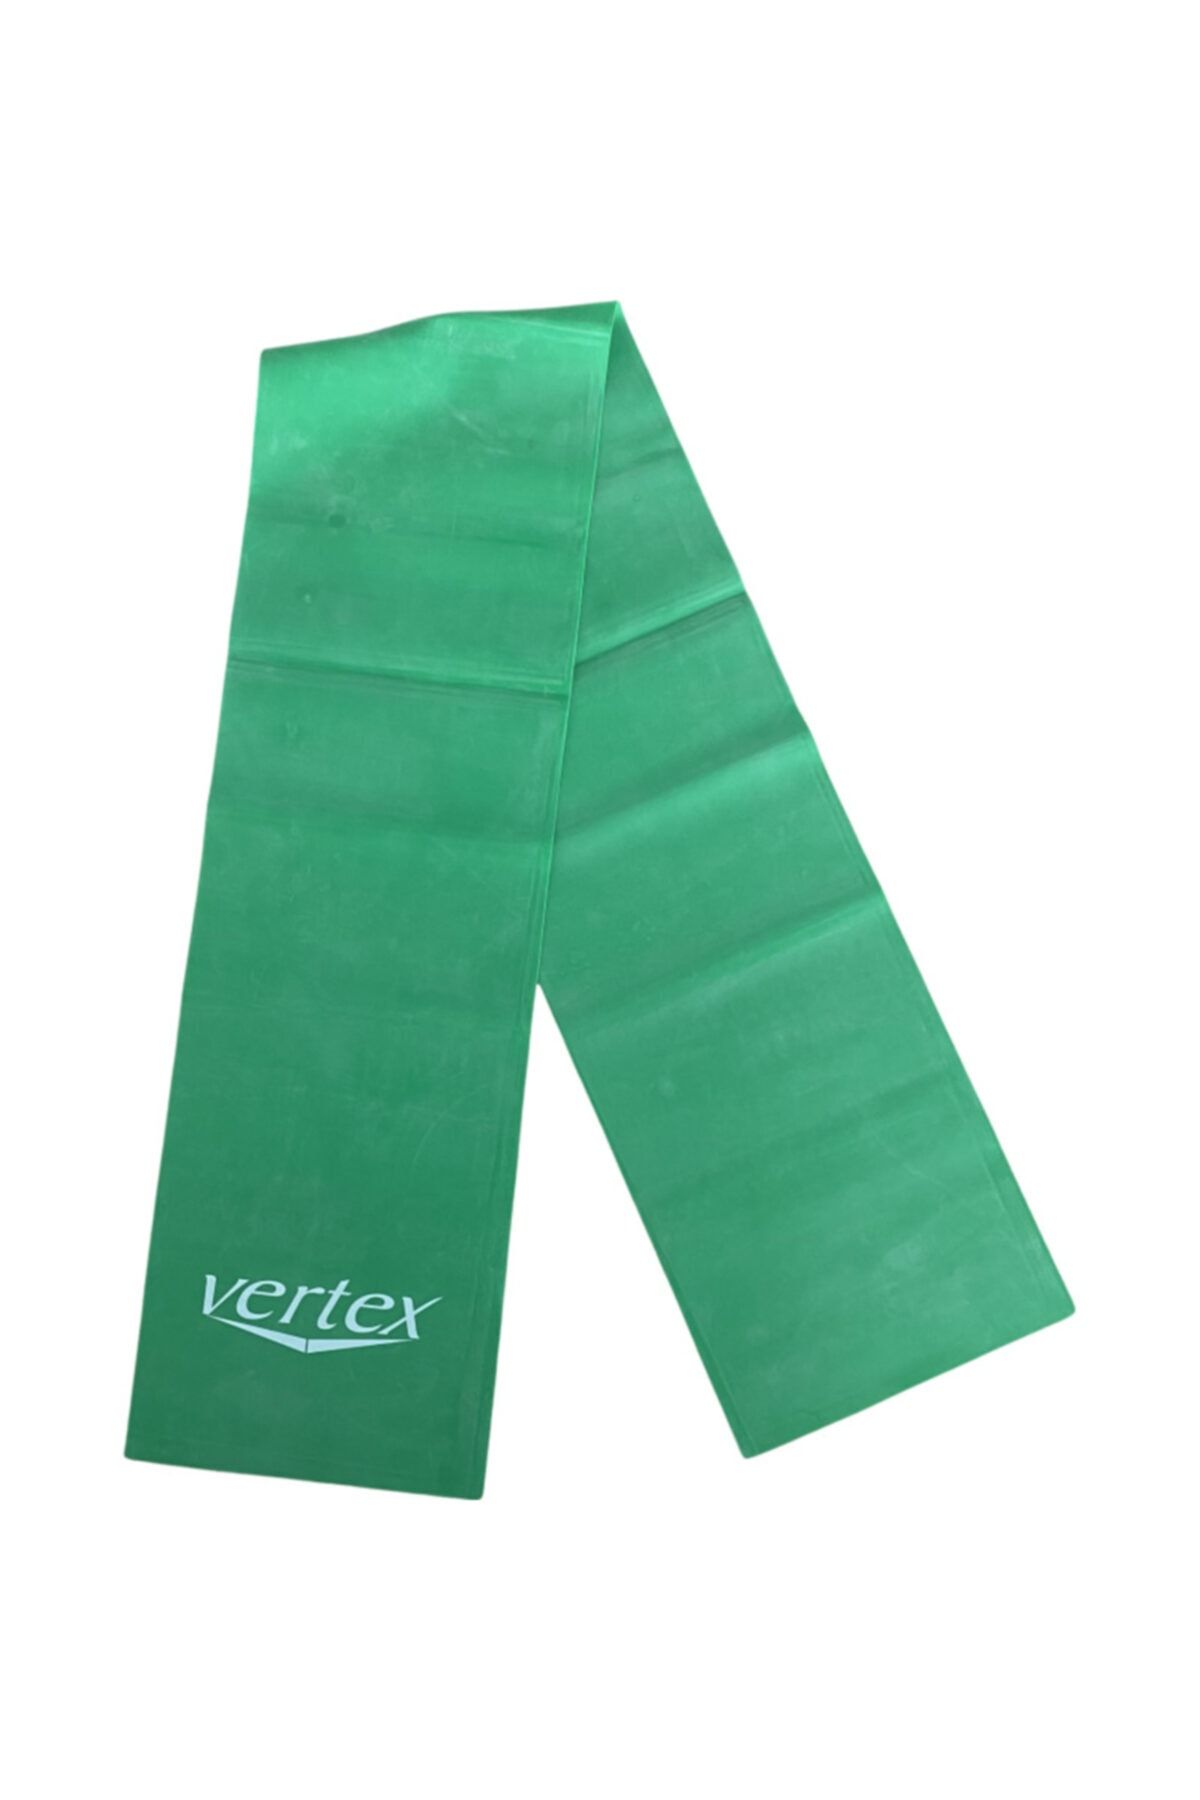 Vertex Pilates Lastiği Tekli Yeşil (orta)